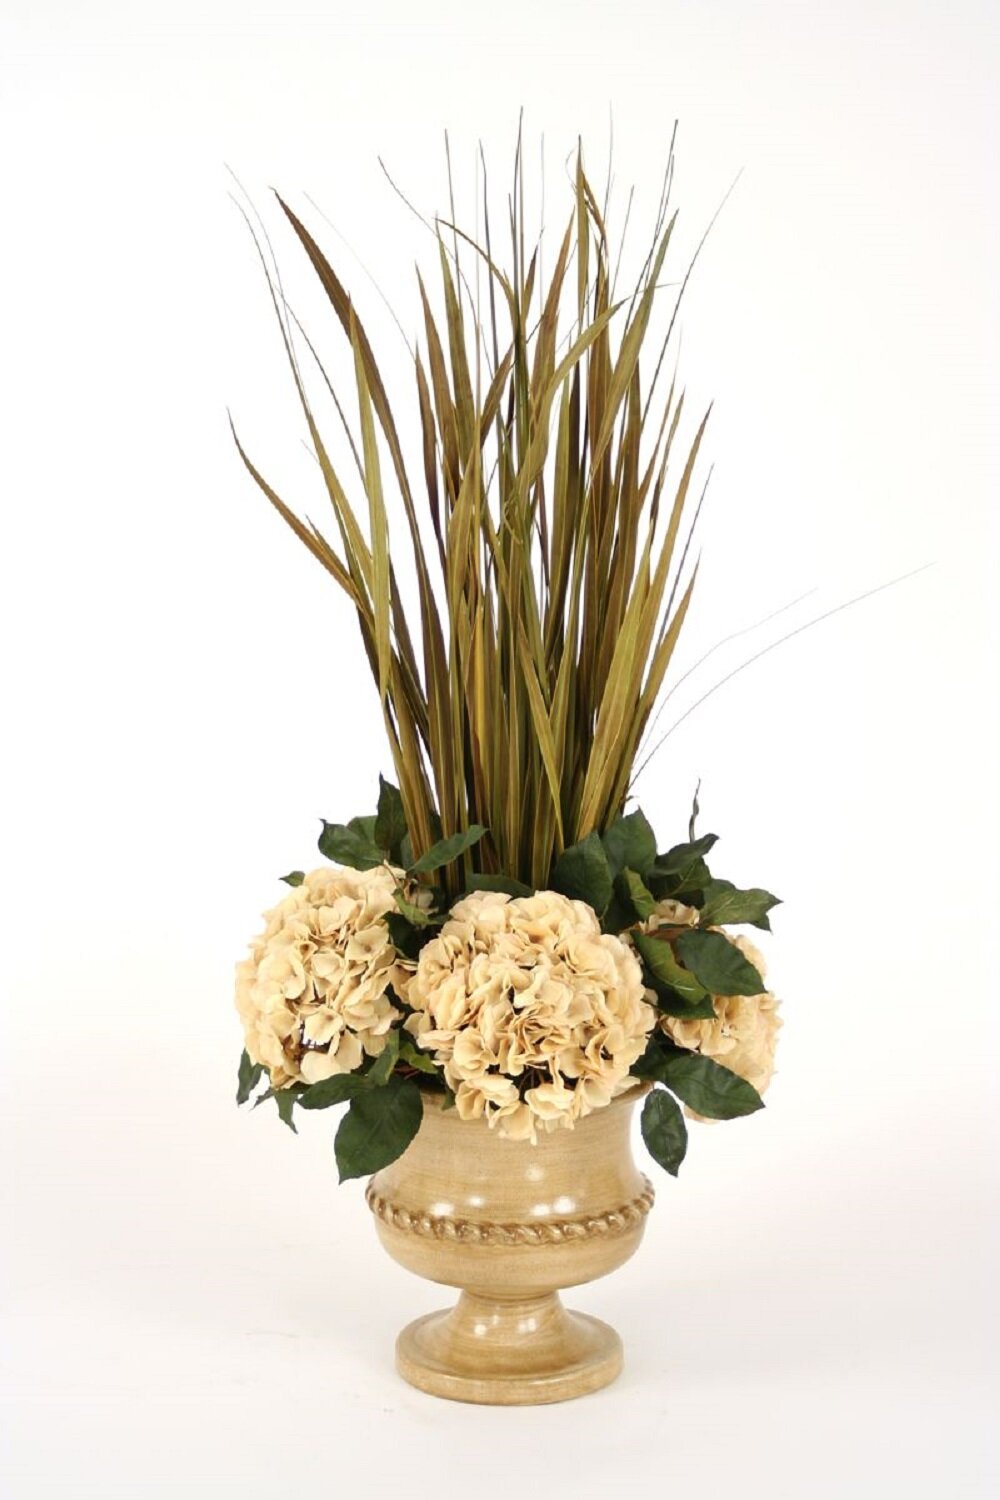 Distinctive Designs Dried Grasses Hydrangeas Floral Arrangements In Vase Wayfair